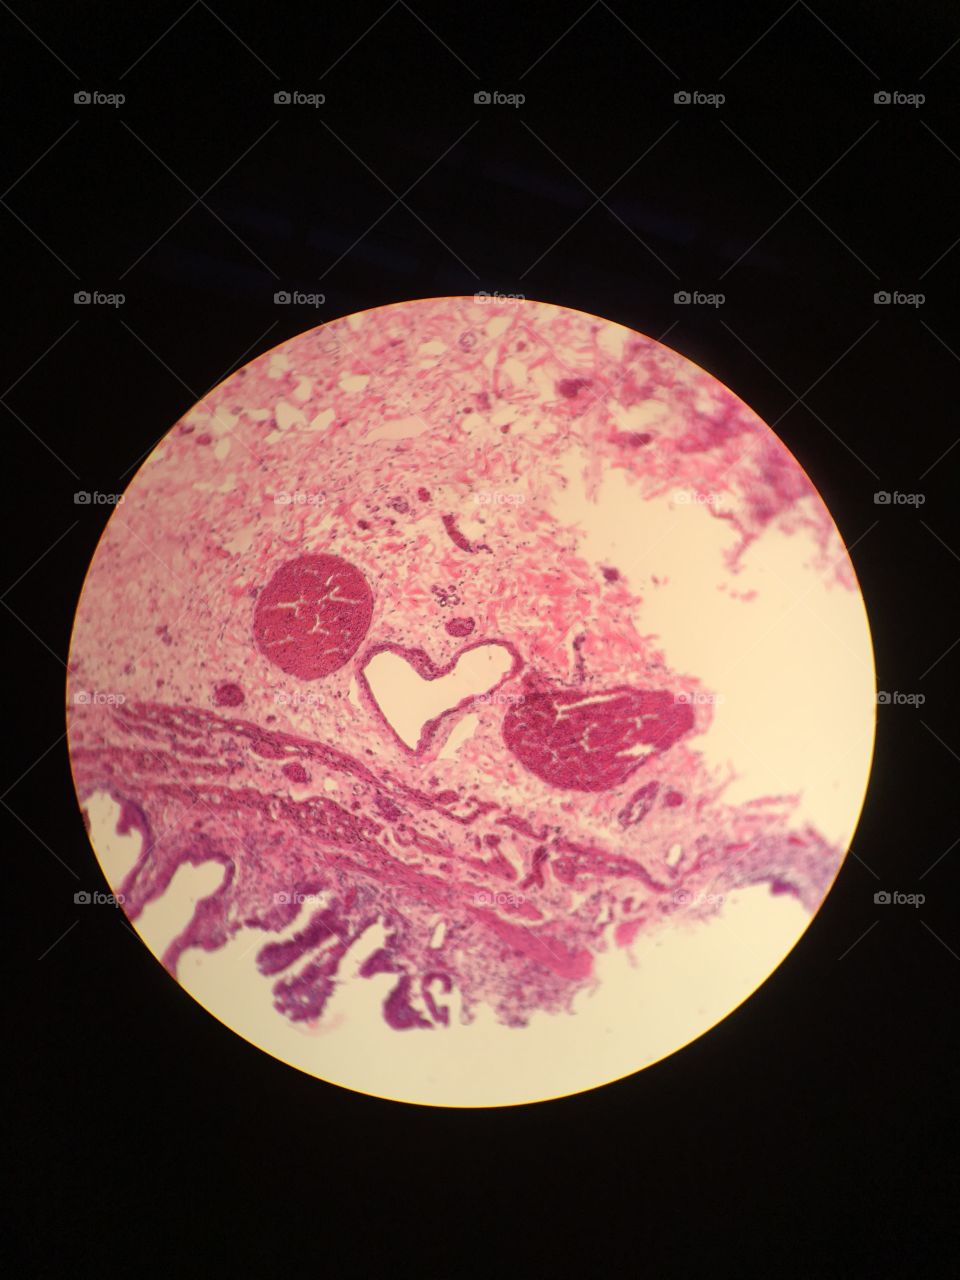 Love heart tissue slide microscope histology 